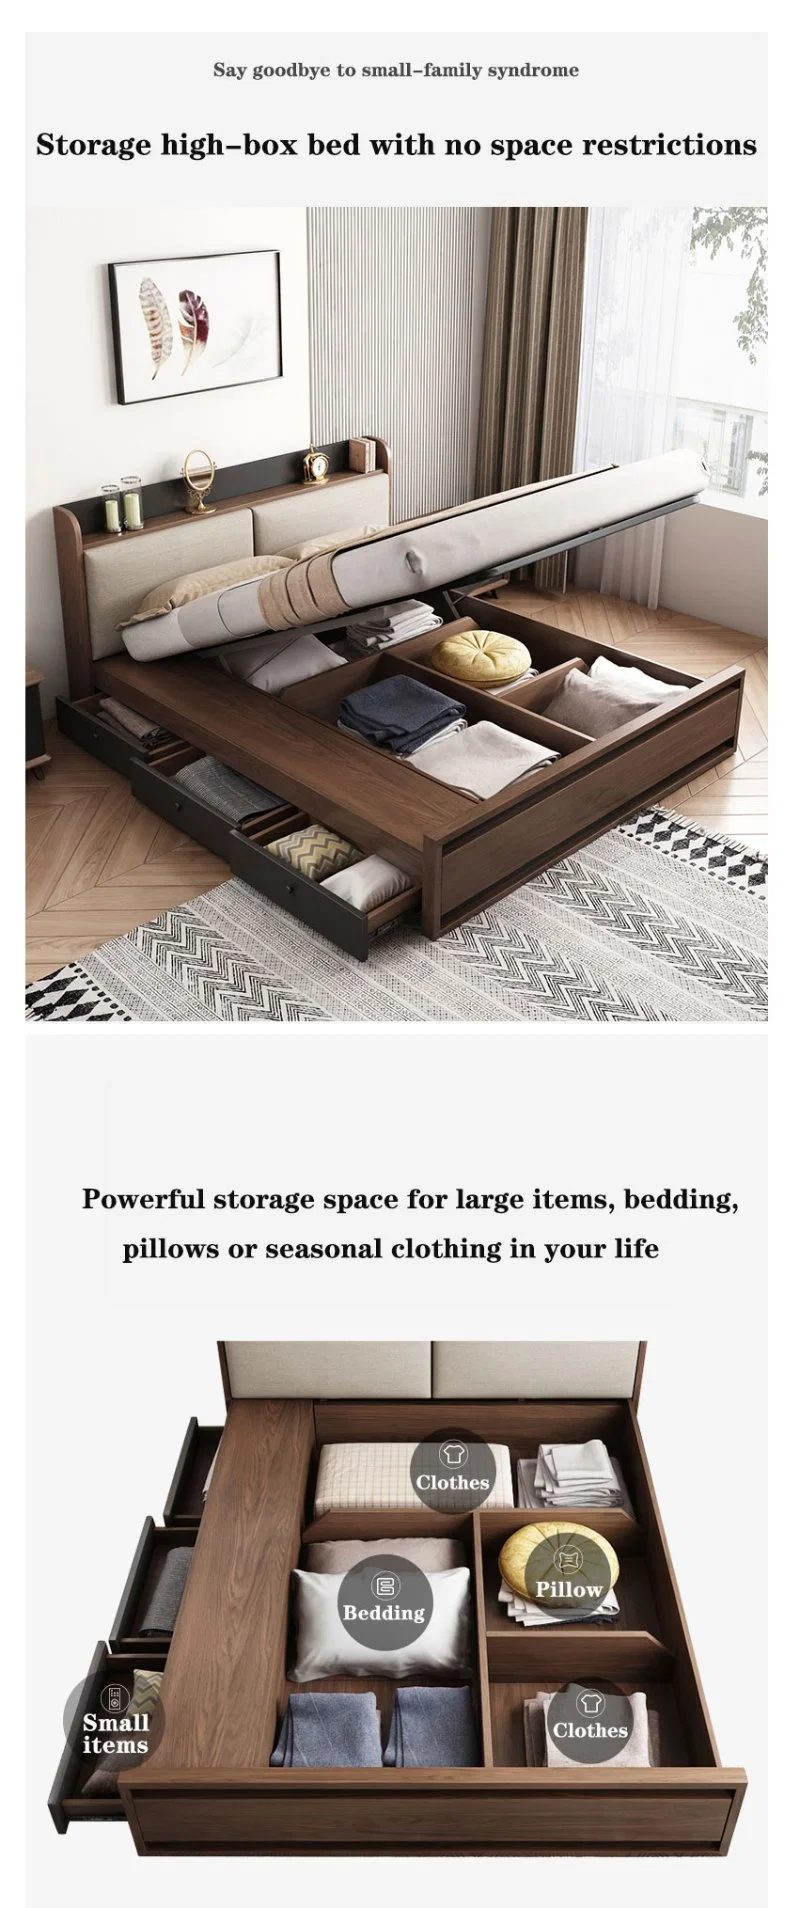 Modern Bedroom Set Soft Murphy Foldable King Size Storage Bed Frame Designer Furniture